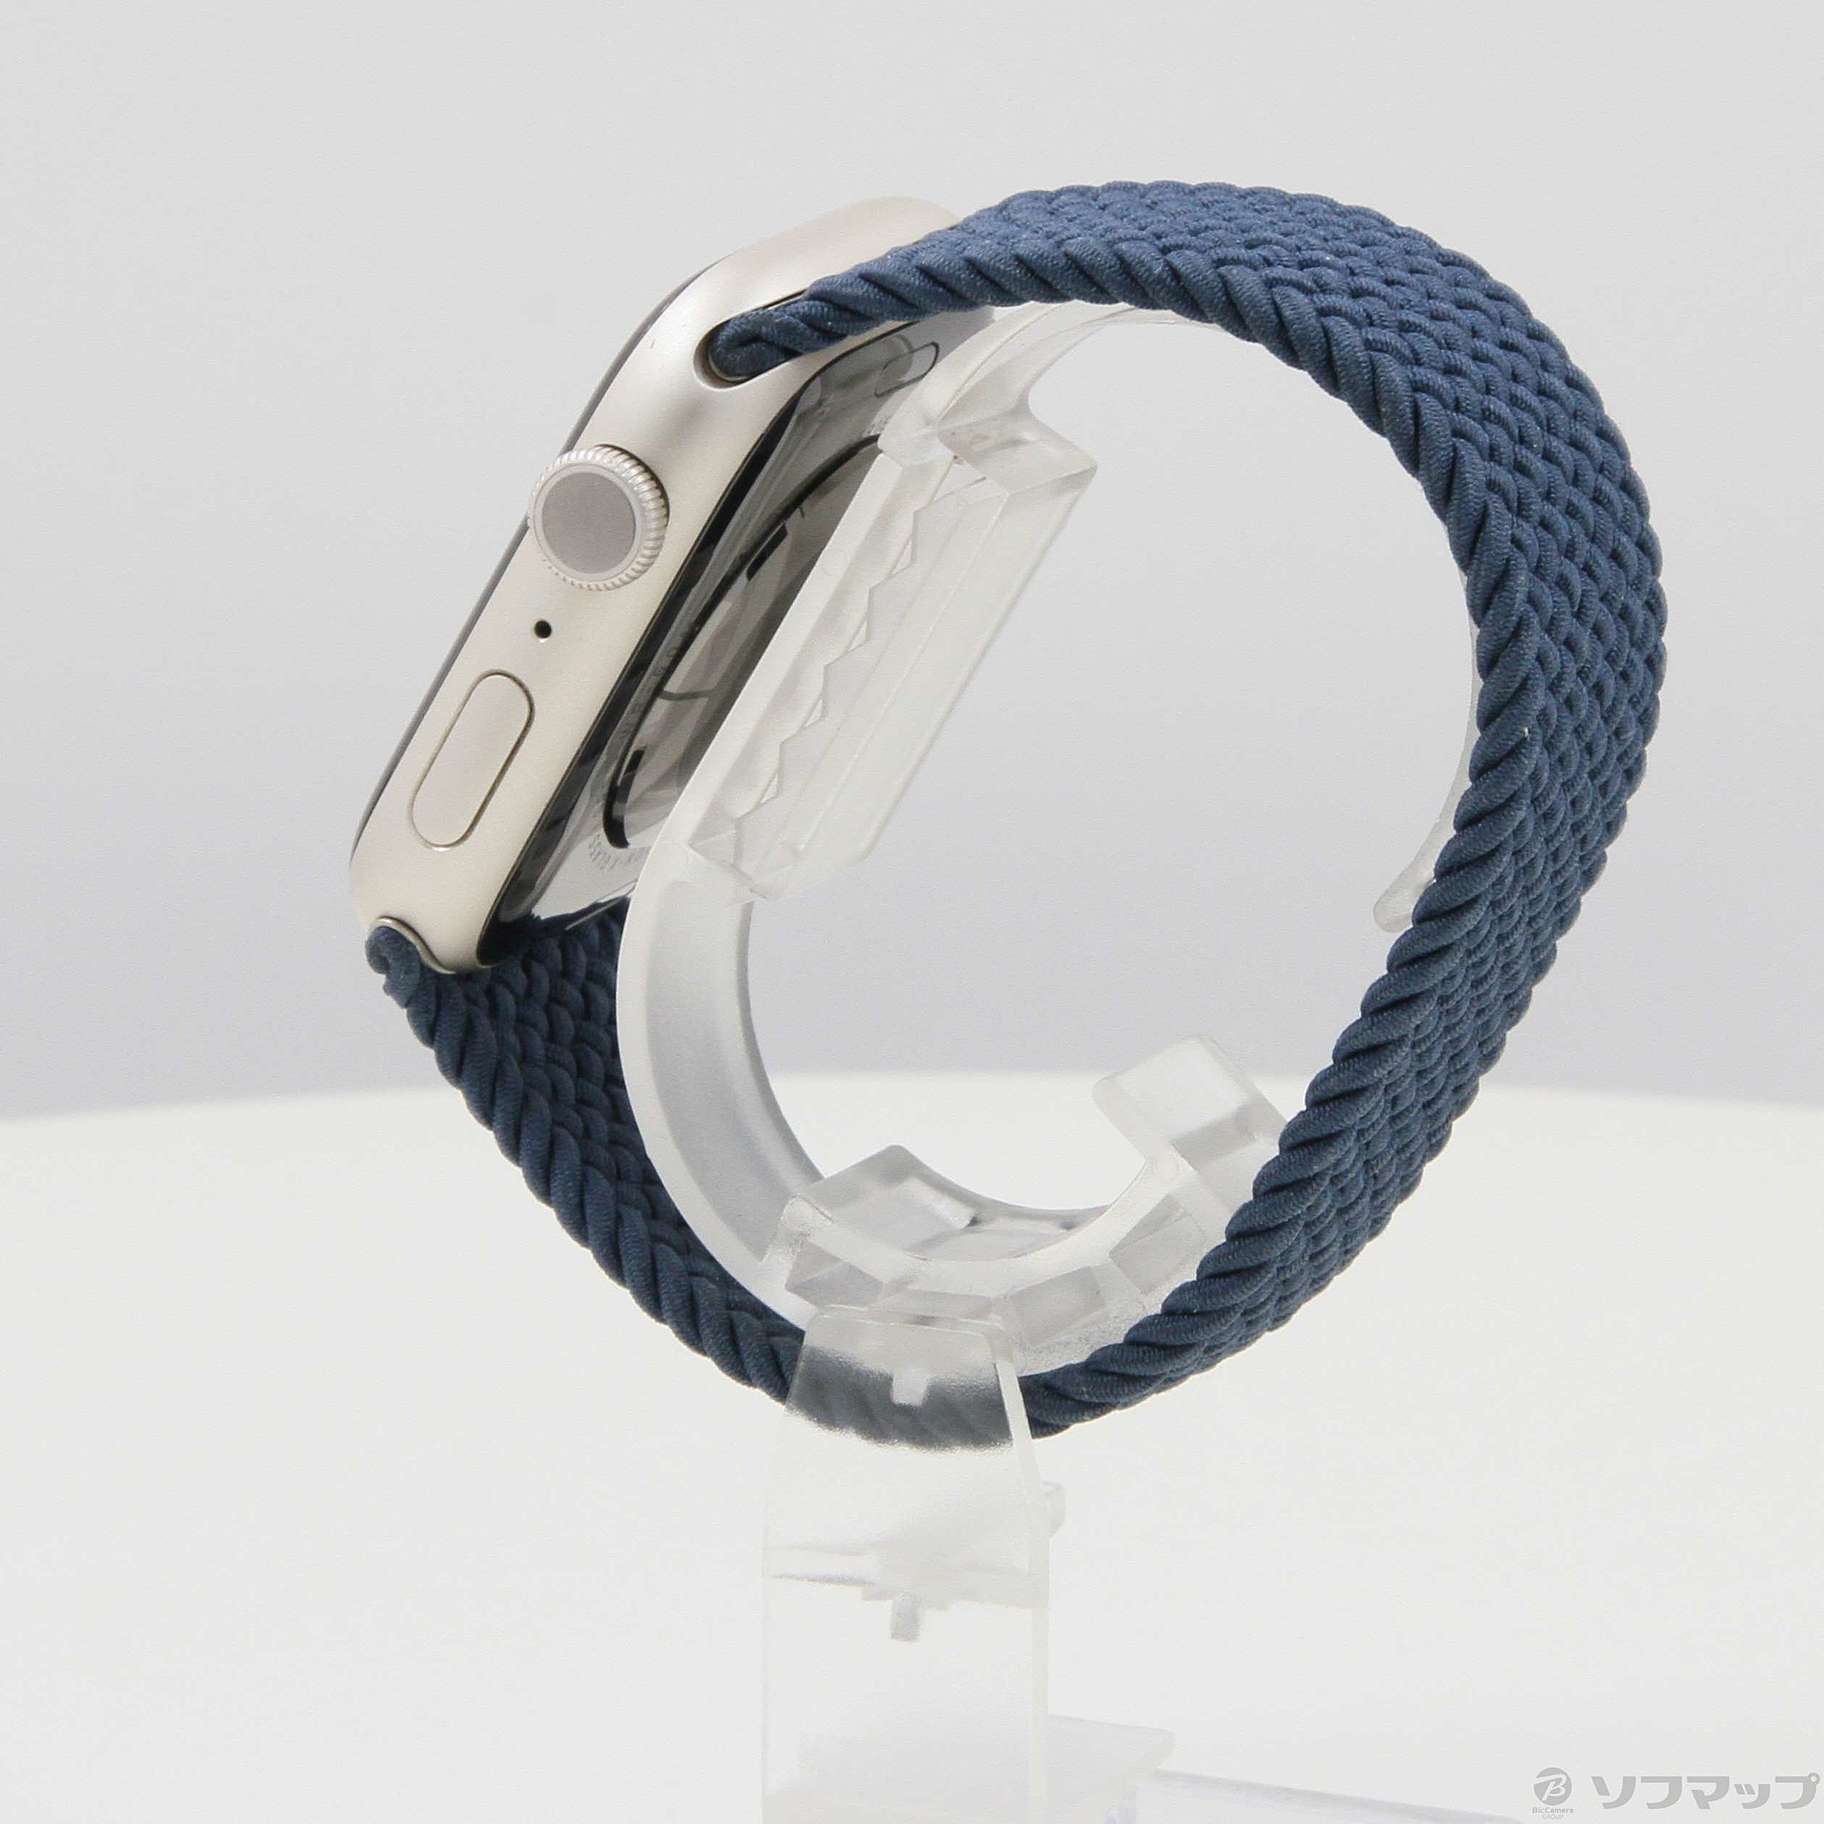 セール対象品 Apple Watch Series 7 GPS 45mm スターライトアルミニウムケース アビスブルーブレイデッドソロループ